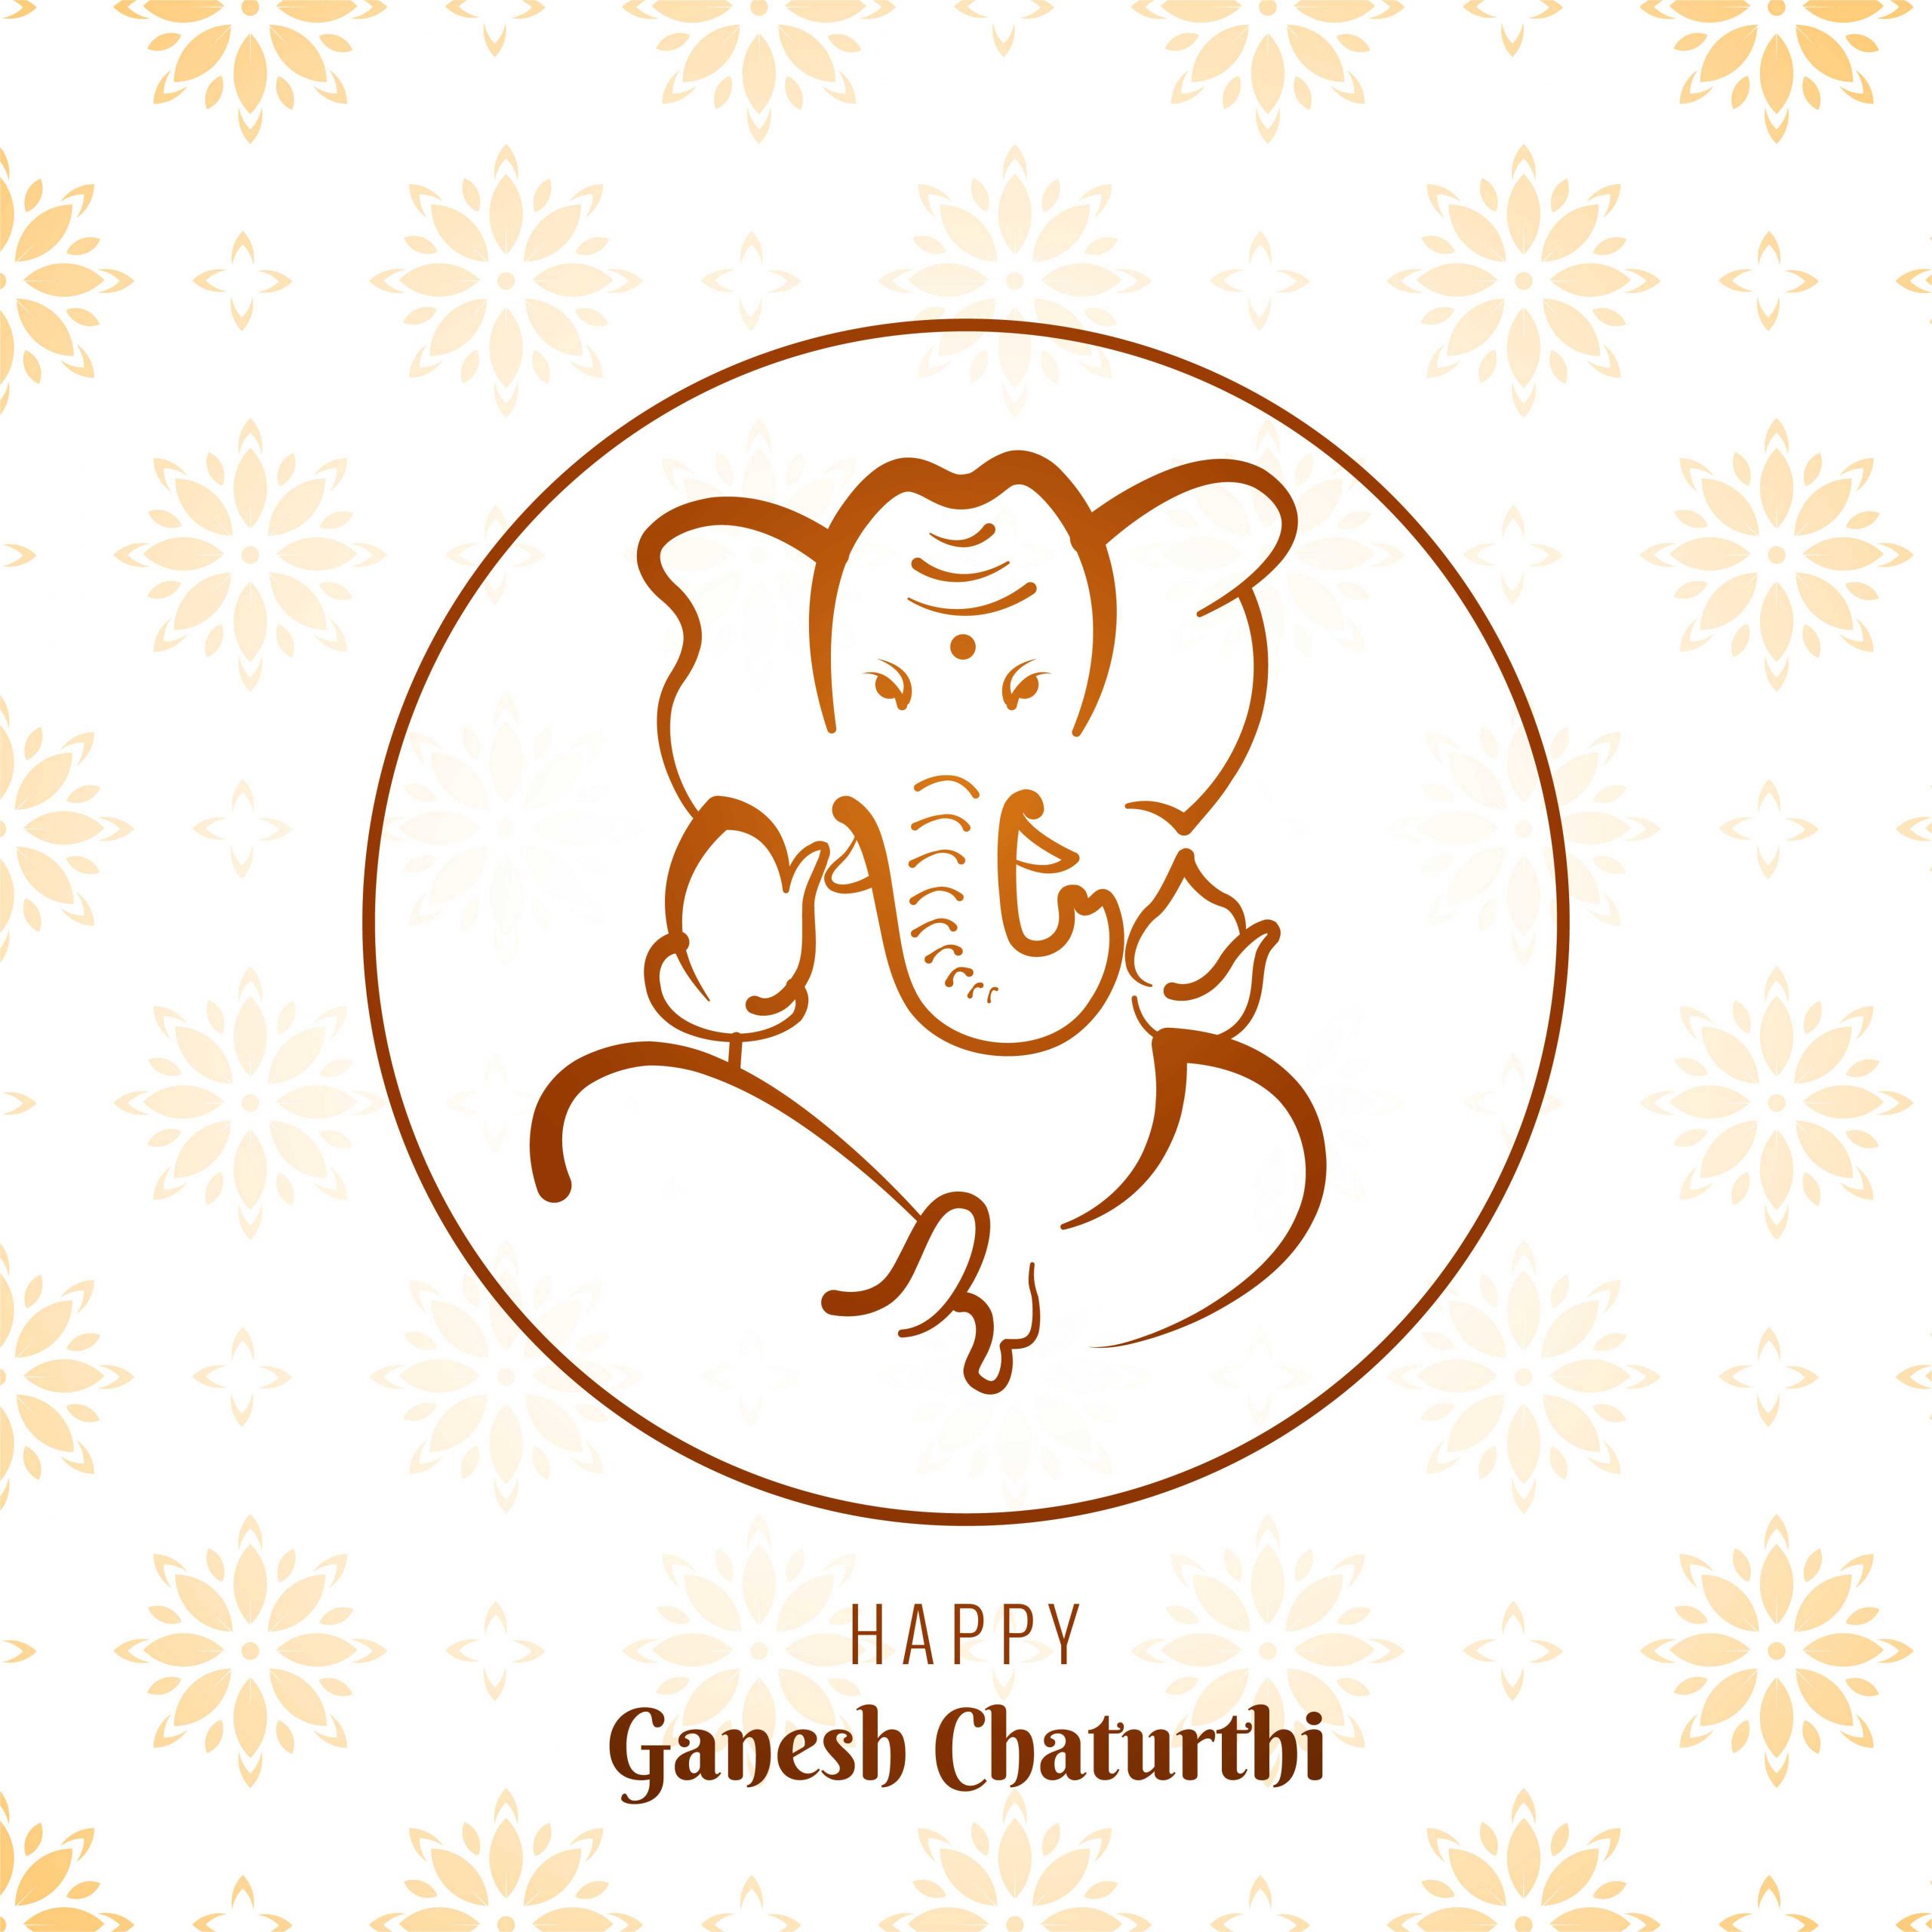 Ganesh Chaturthi image download